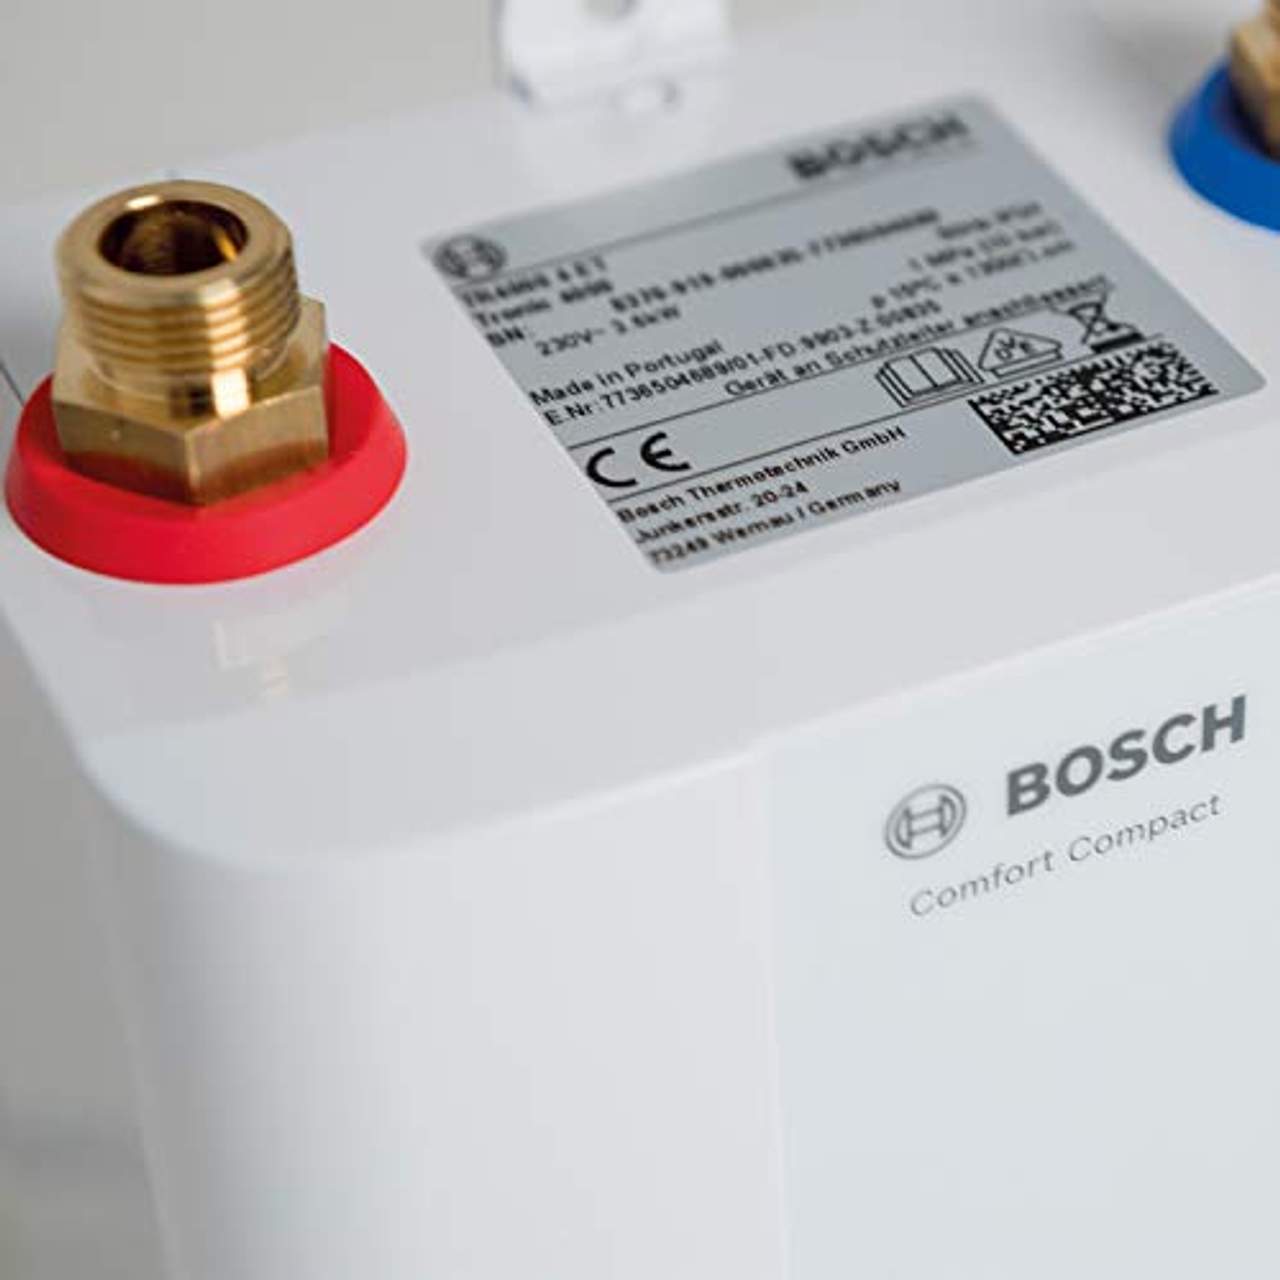 Bosch elektronischer Kleindurchlauferhitzer Tronic 4000 5 ET